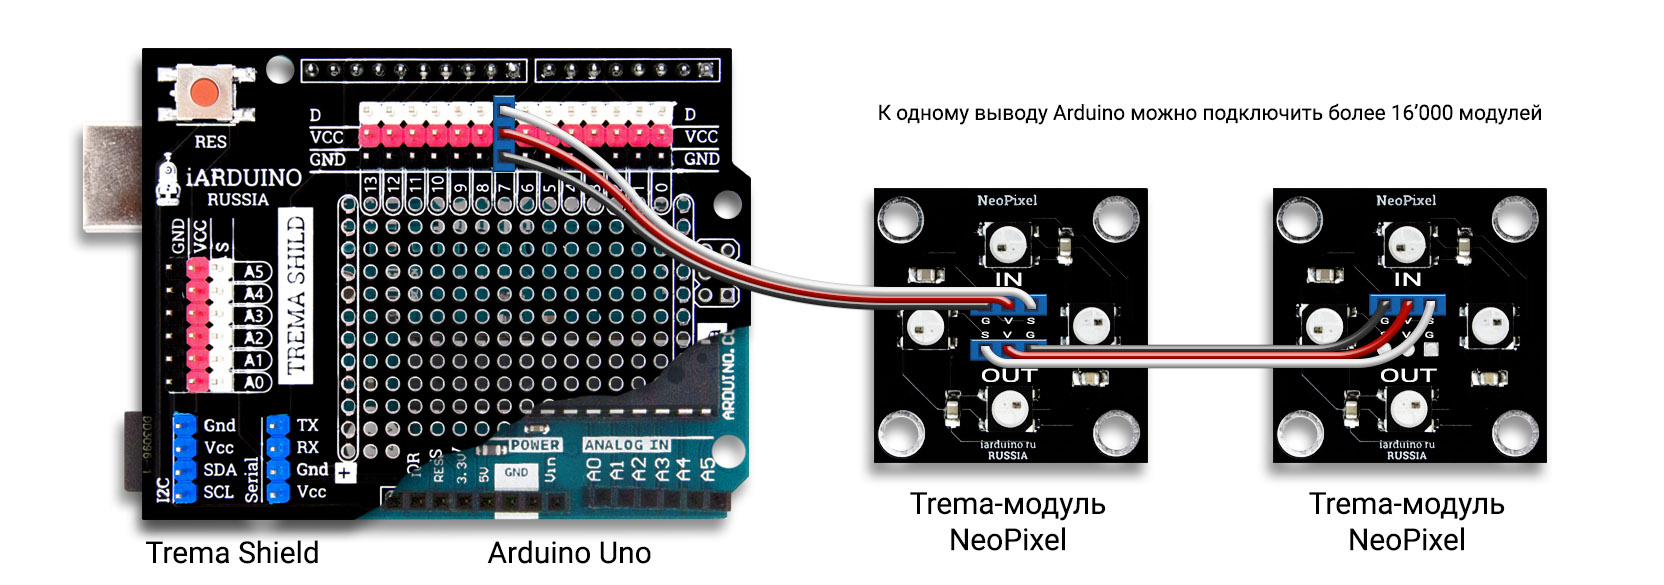 Подключение модуля NeoPixel к Arduino